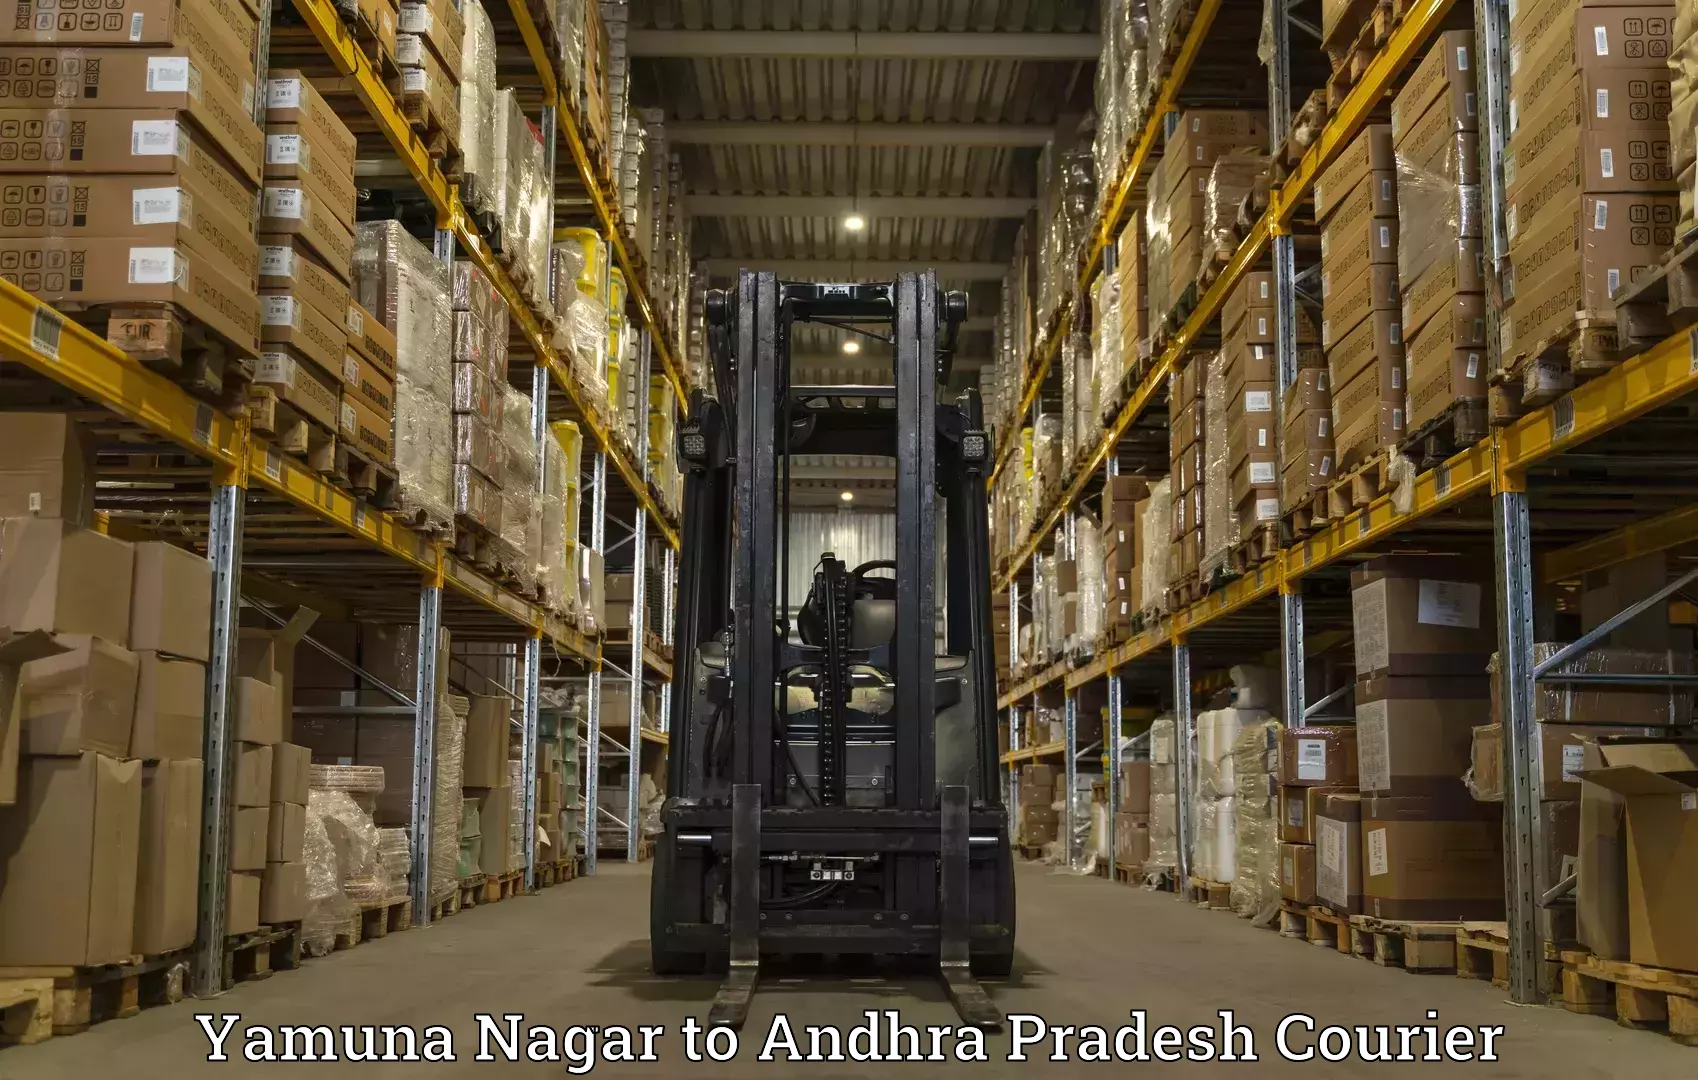 Global shipping solutions Yamuna Nagar to Chandragiri